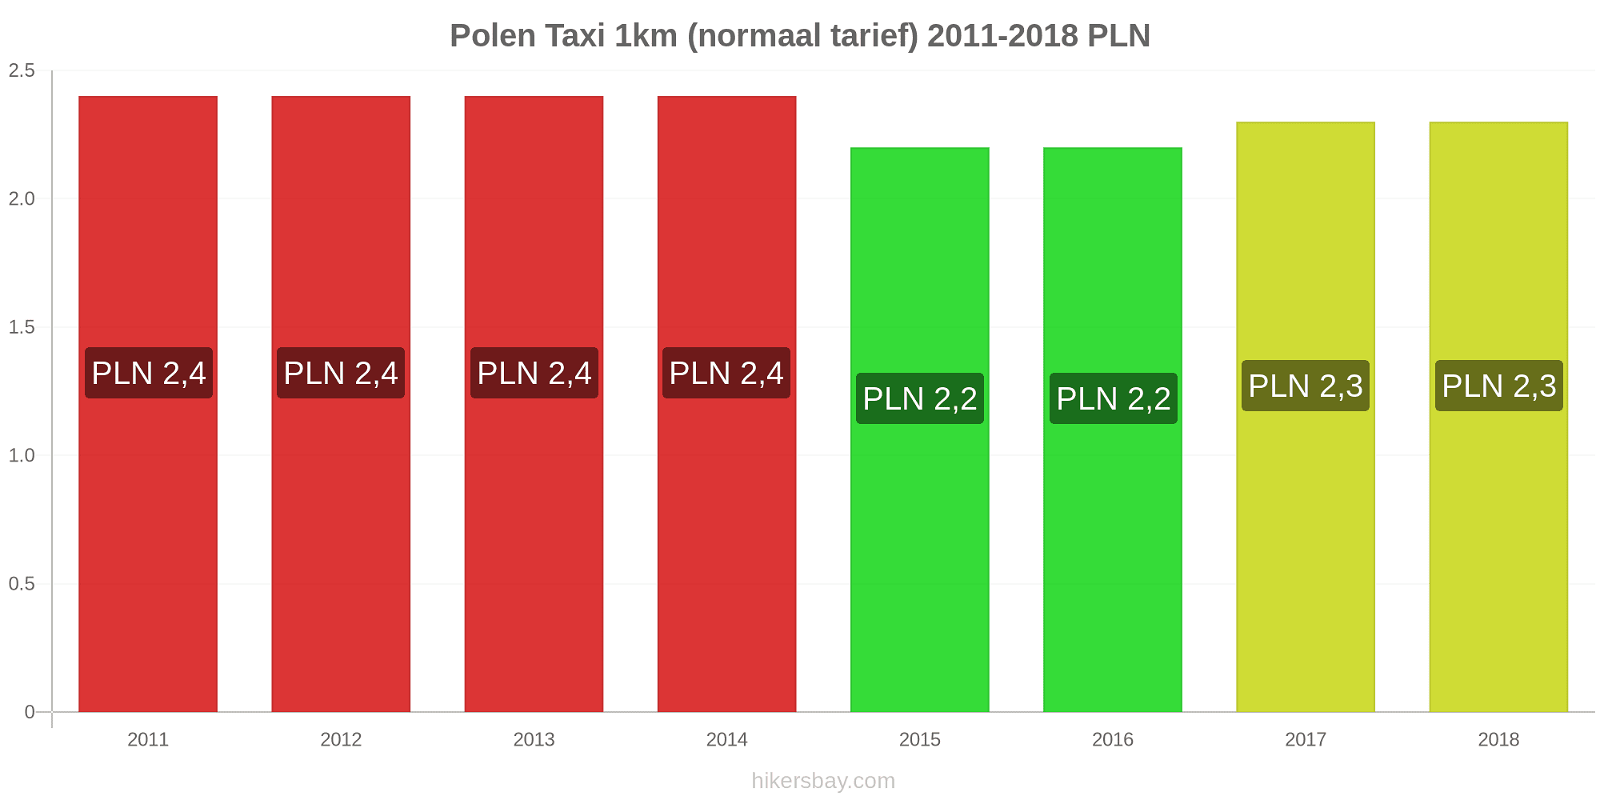 Polen prijswijzigingen Taxi 1km (normaal tarief) hikersbay.com